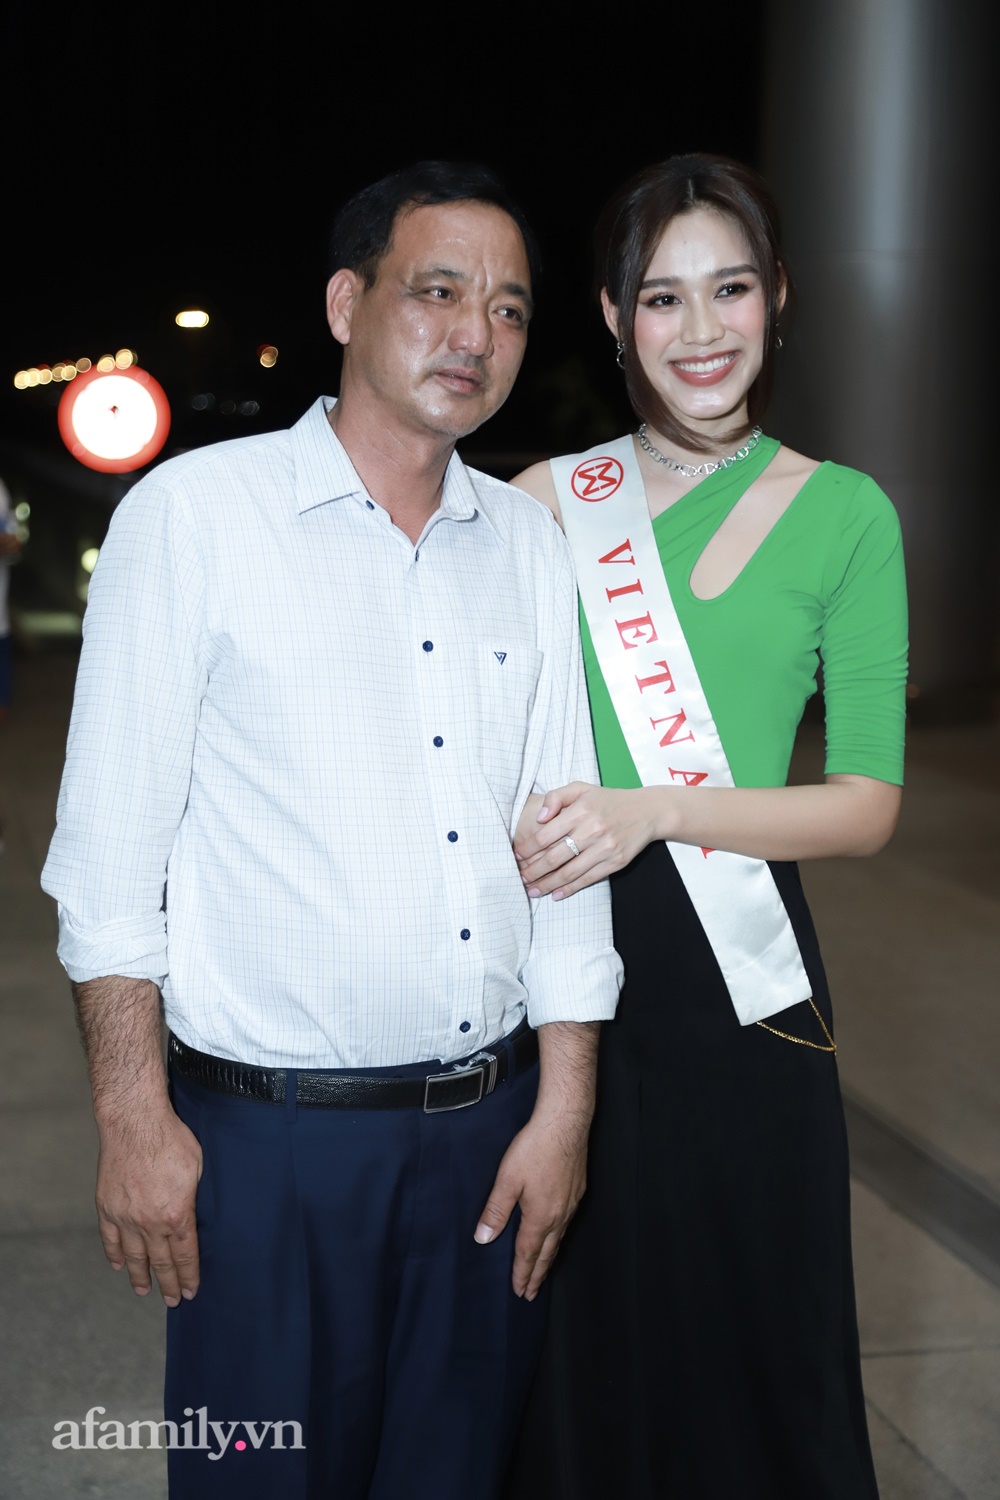 HOT: Đỗ Thị Hà lên đường dự chung kết Miss World 2021 trong đêm, hội chị em nàng Hậu rạng rỡ ra tiễn - Ảnh 5.